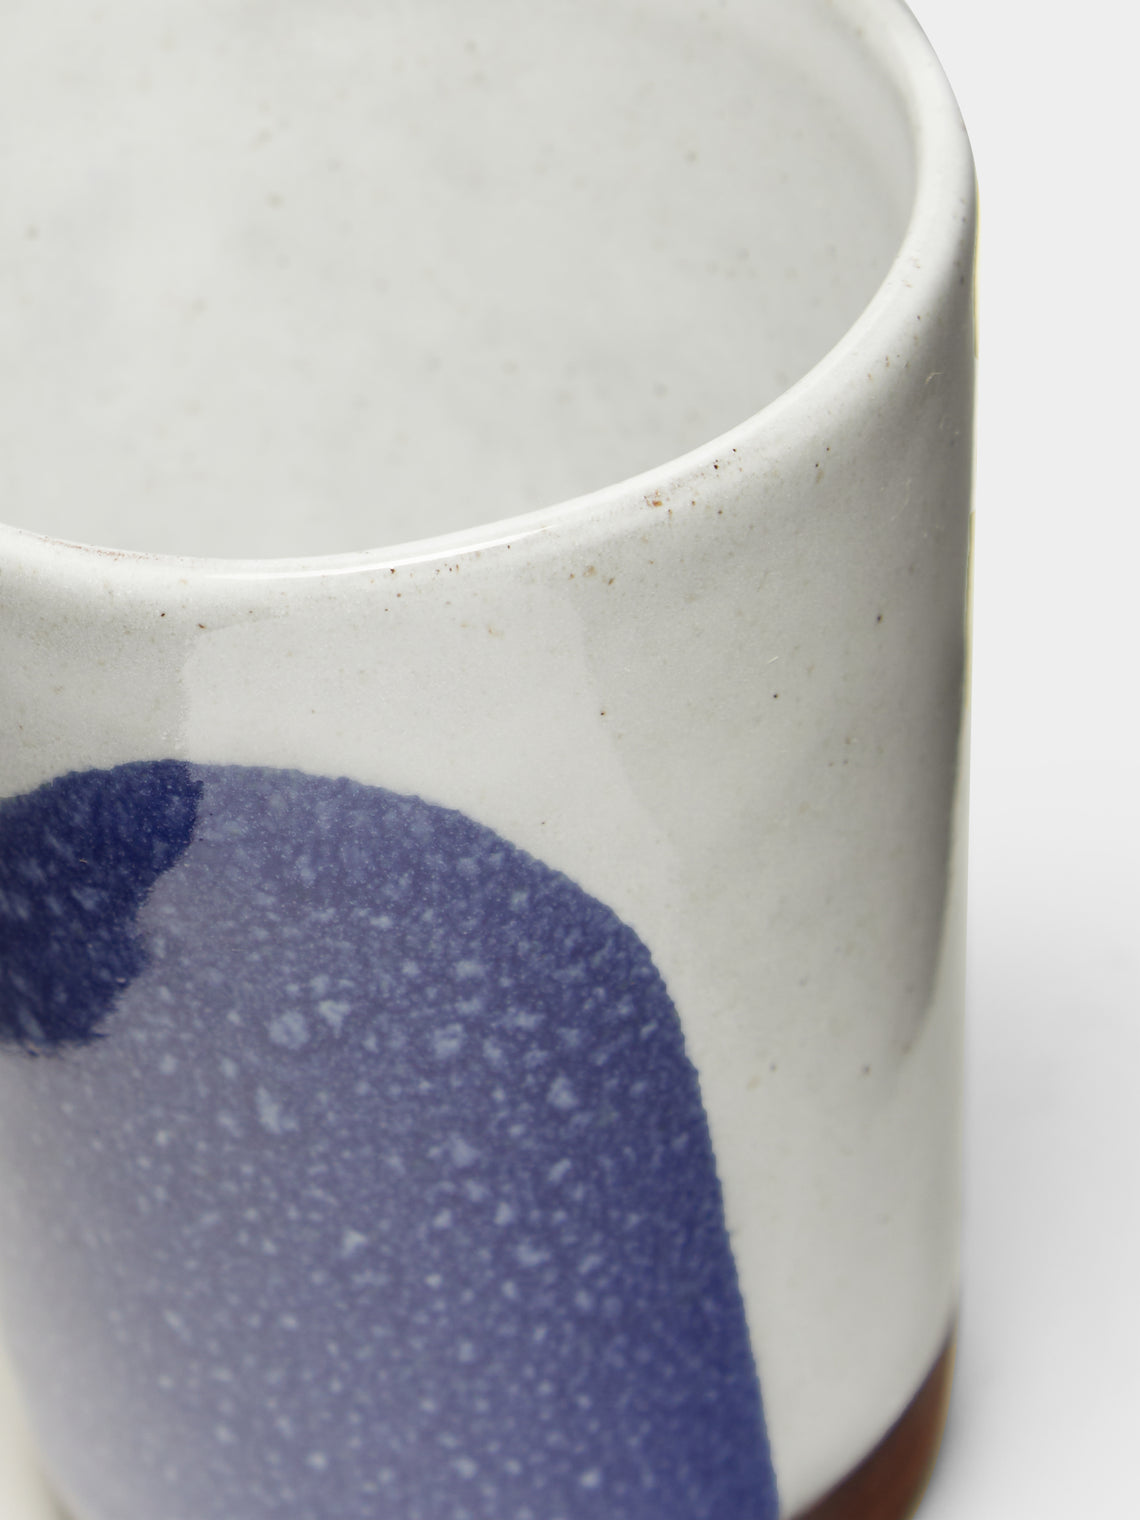 Silvia K Ceramics - Hand-Glazed Terracotta Beakers (Set of 4) -  - ABASK